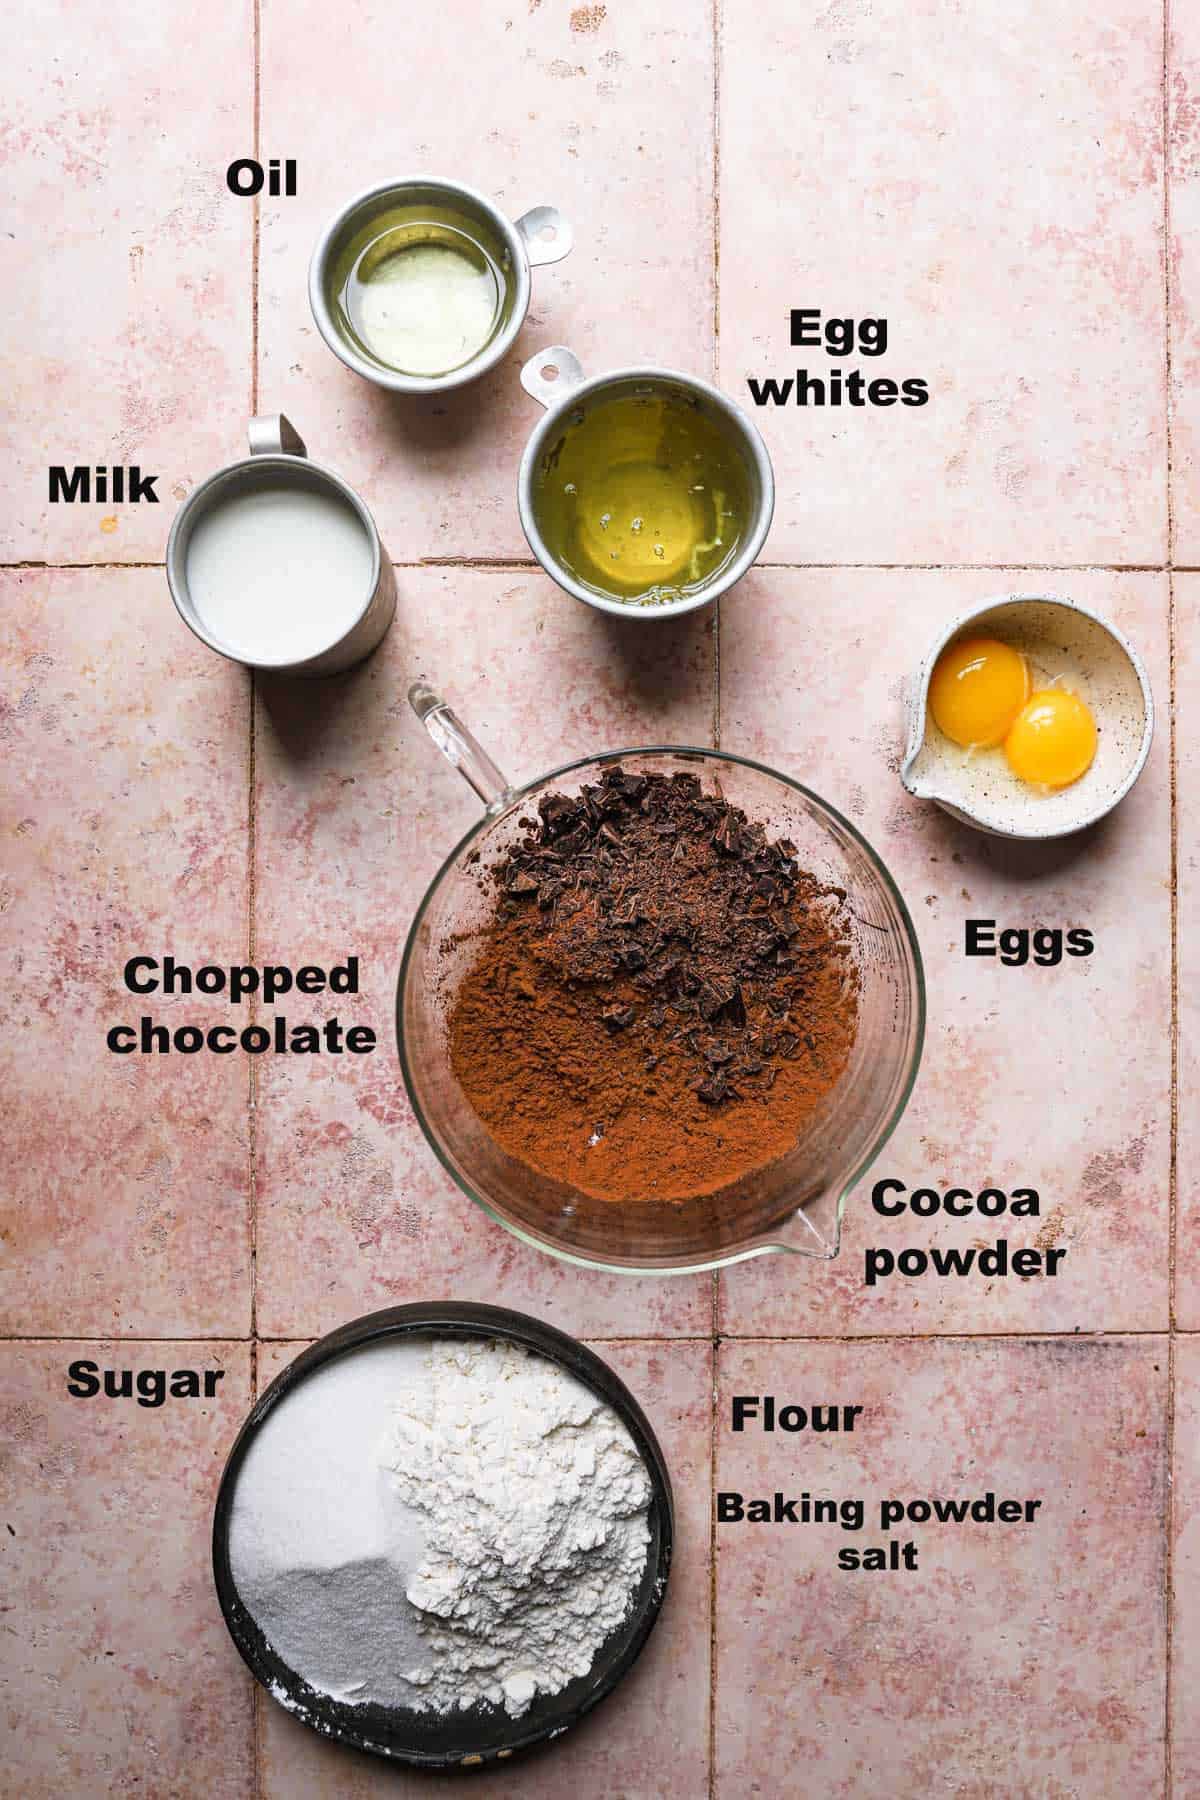 Ingredients to make waffles